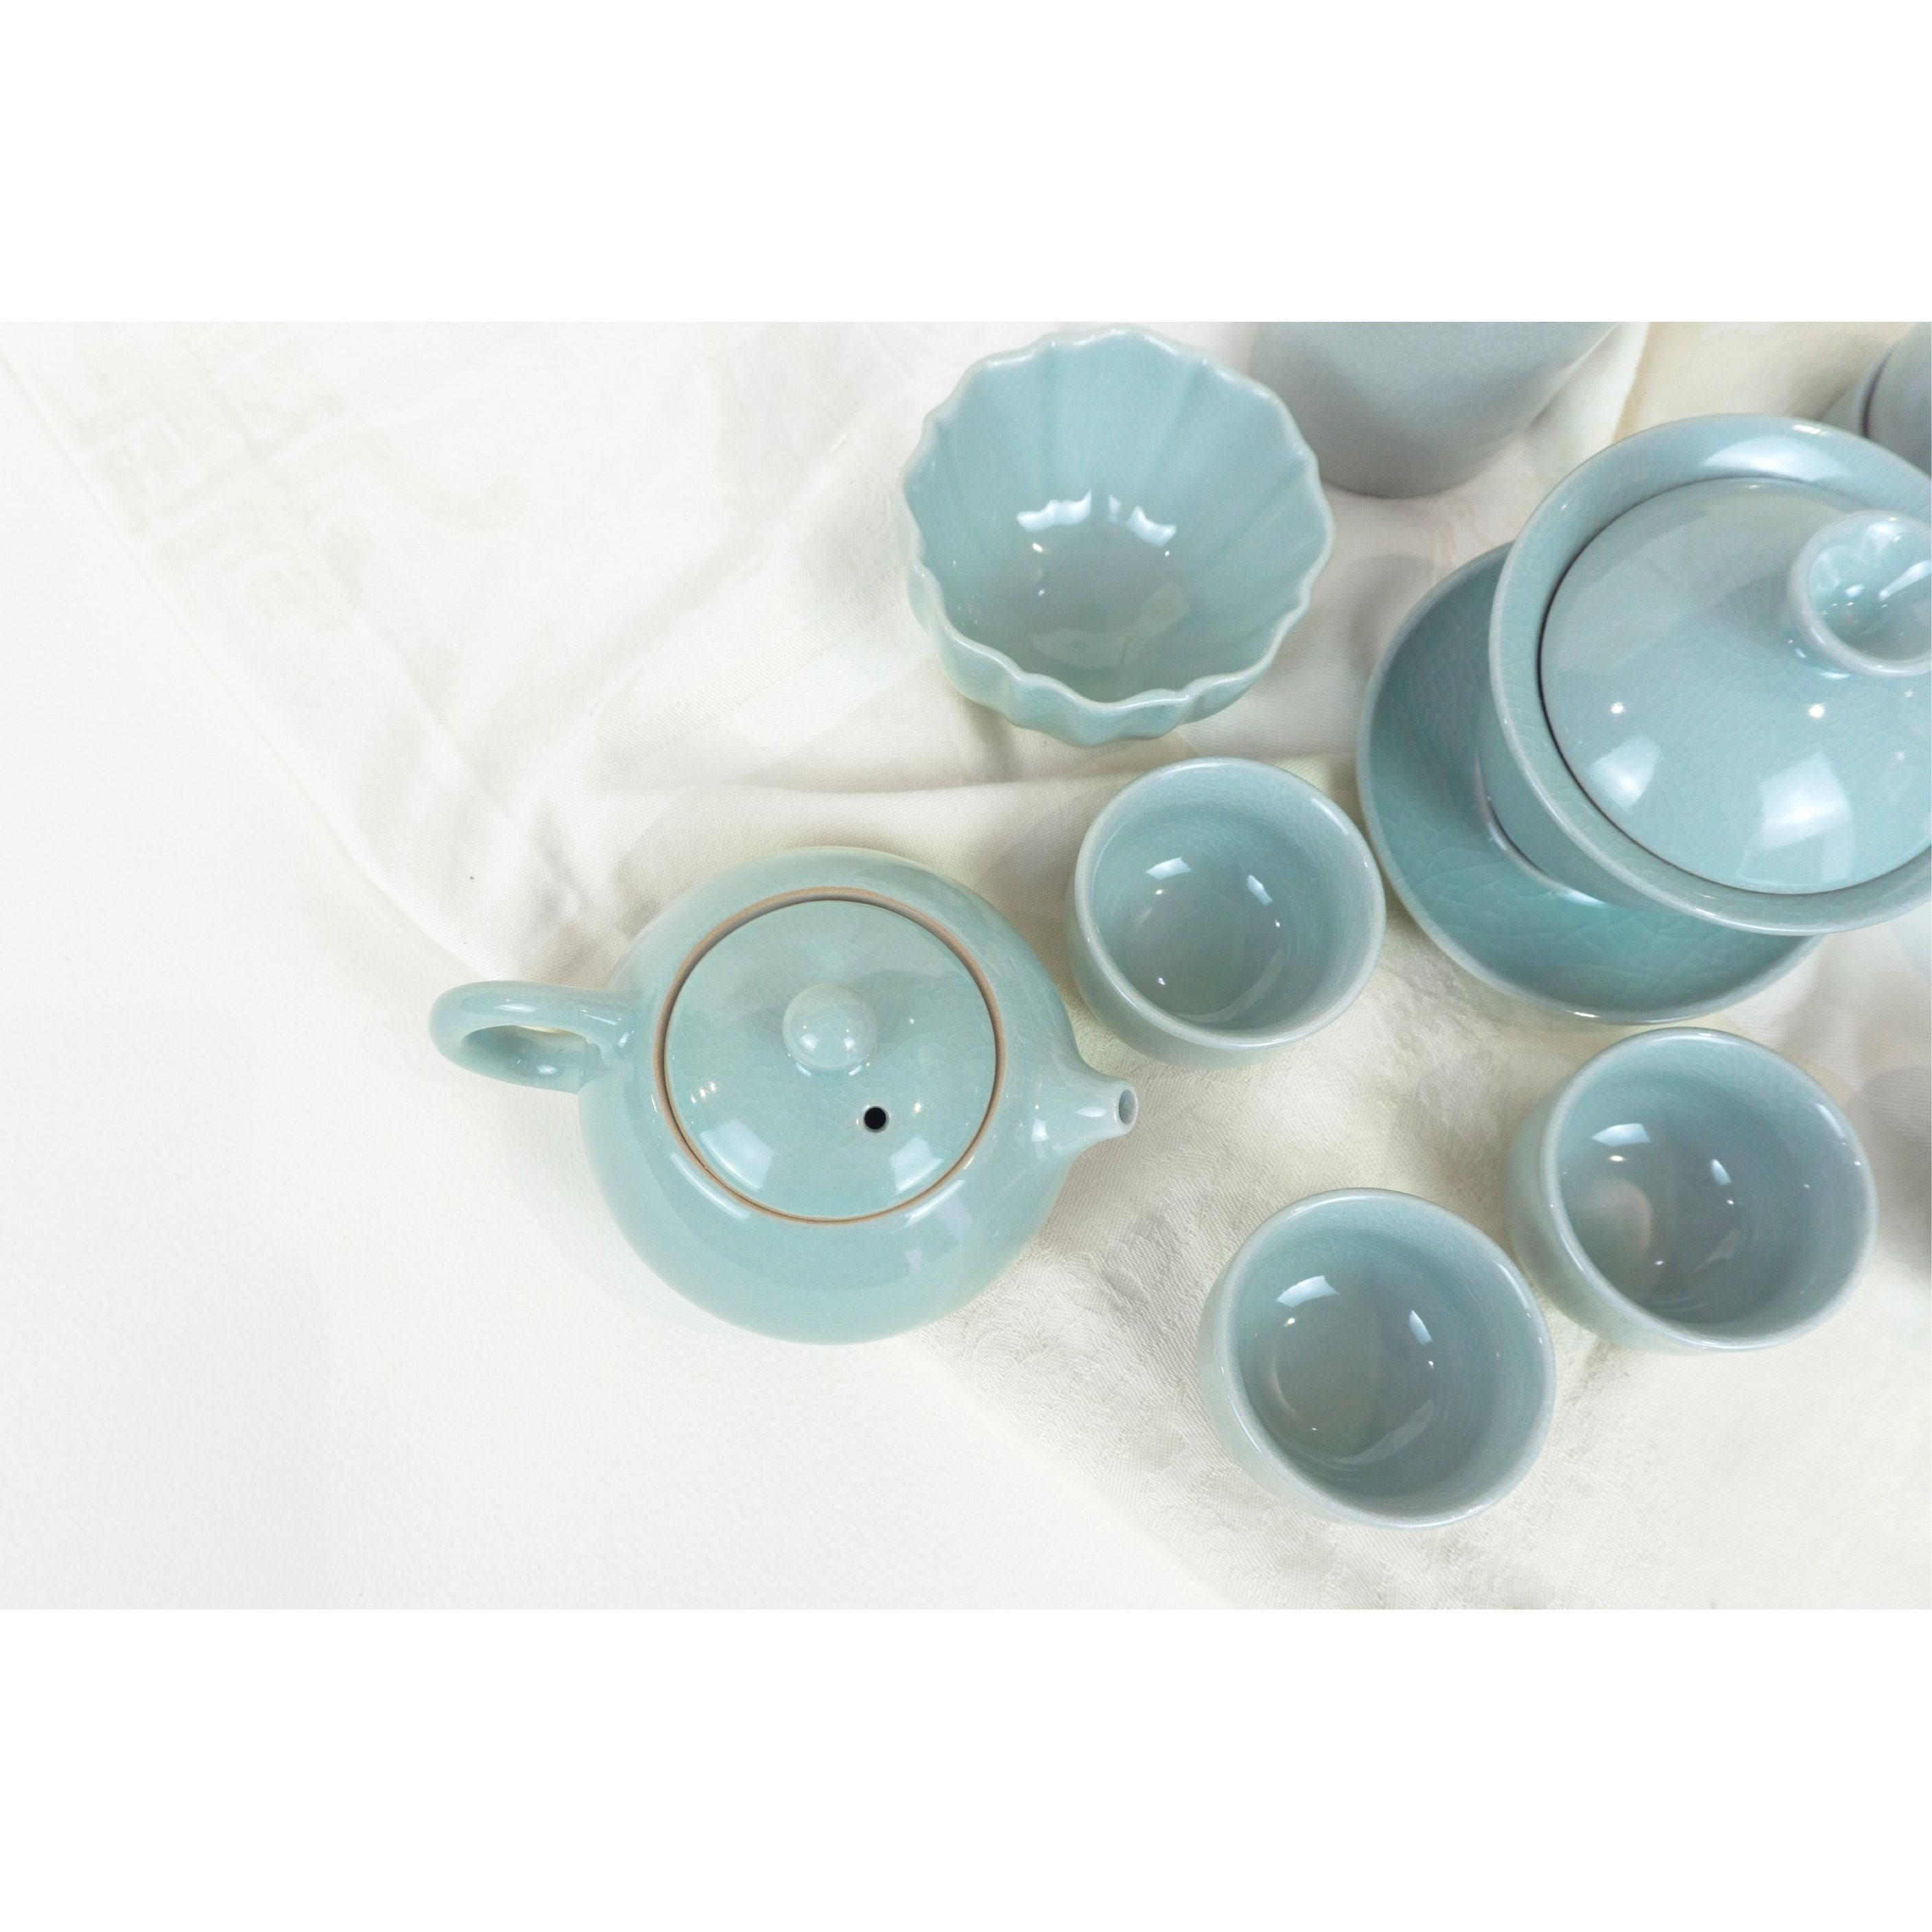 Tea Ceremony Set, Ru Kiln Lt. Blue Porcelain, Brown Carrying Case